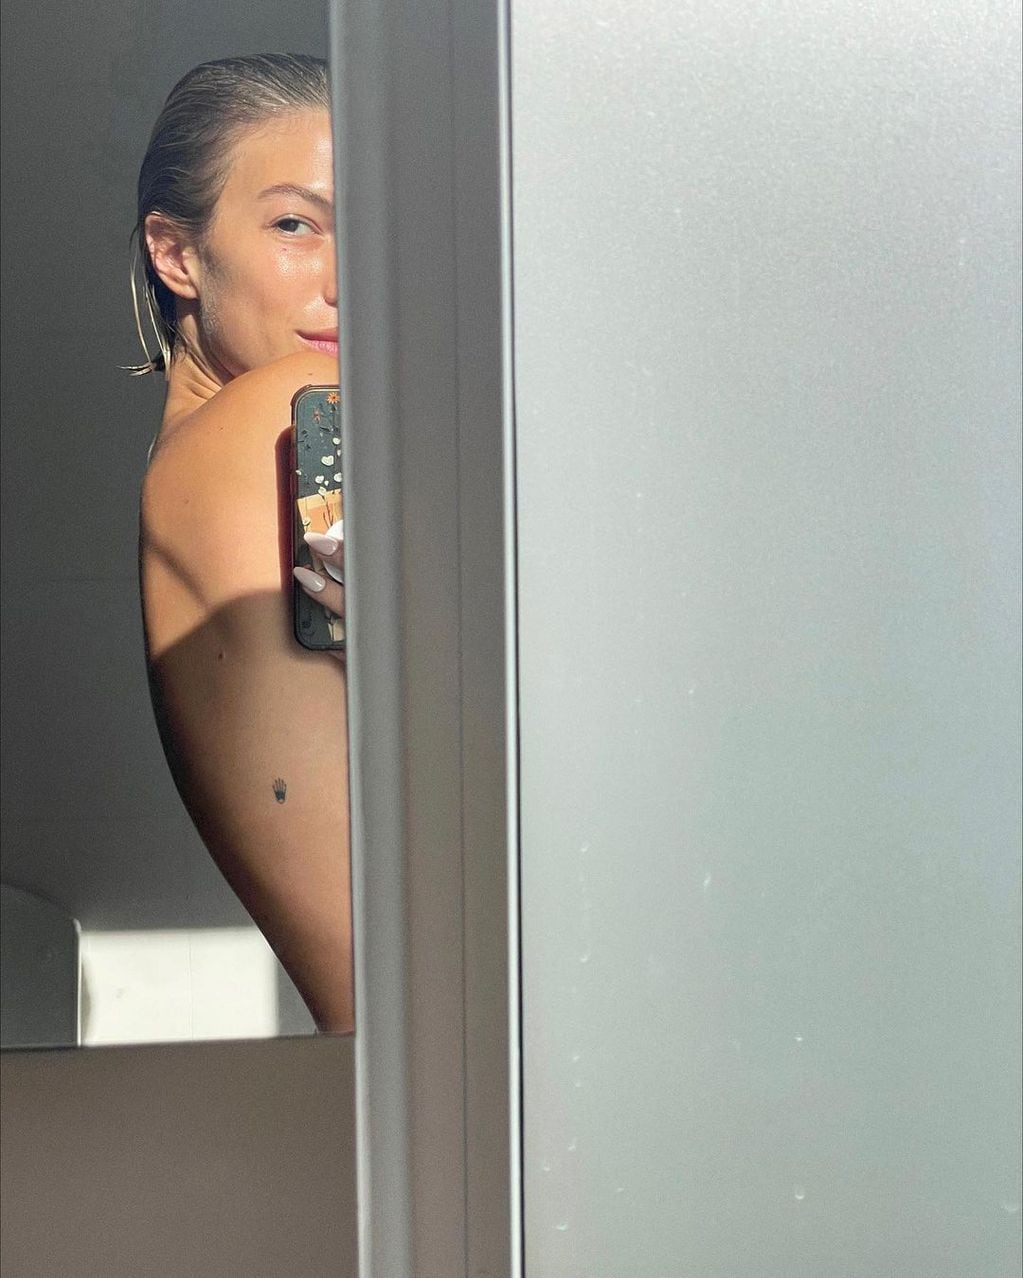 Desde la ducha y frente al espejo, Stefi Roitman sorprendió con fotos sin ropa.